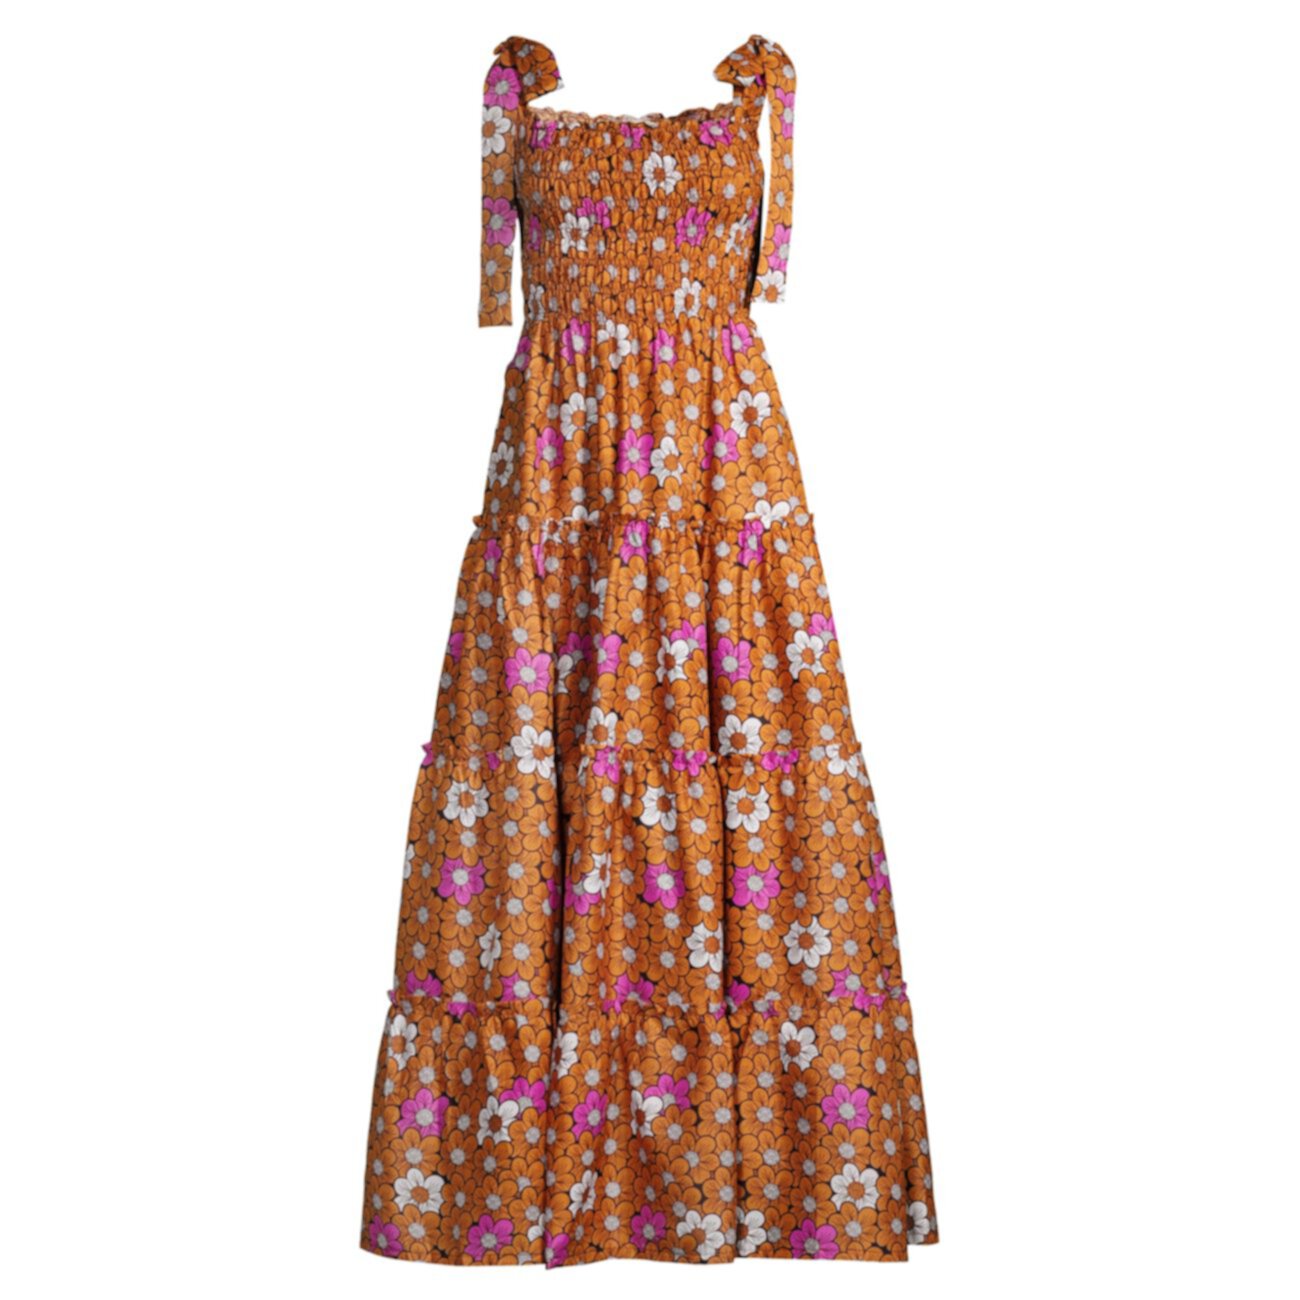 Платье макси без рукавов с цветочным принтом Elisamama